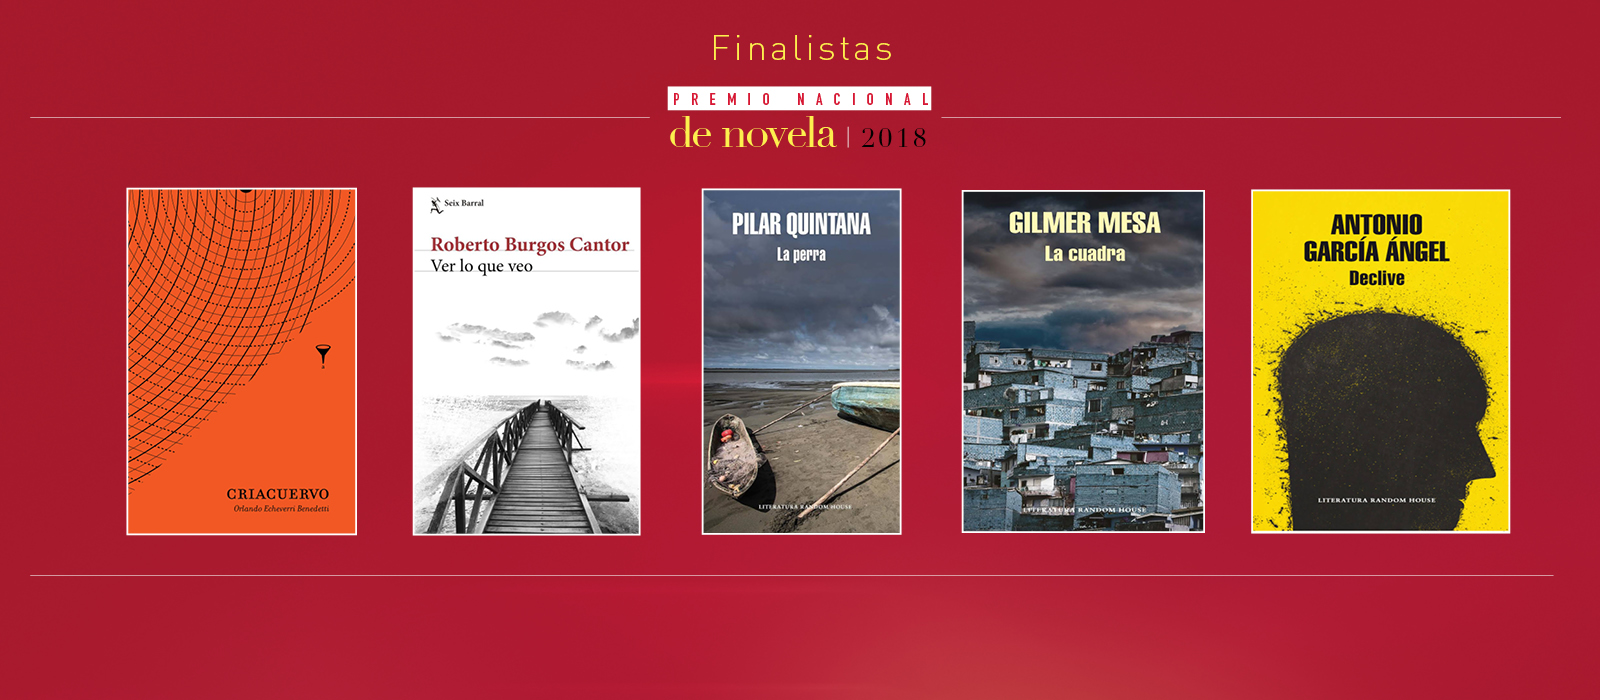 Estos son los cinco finalistas del Premio Nacional de Novela del Ministerio de Cultura